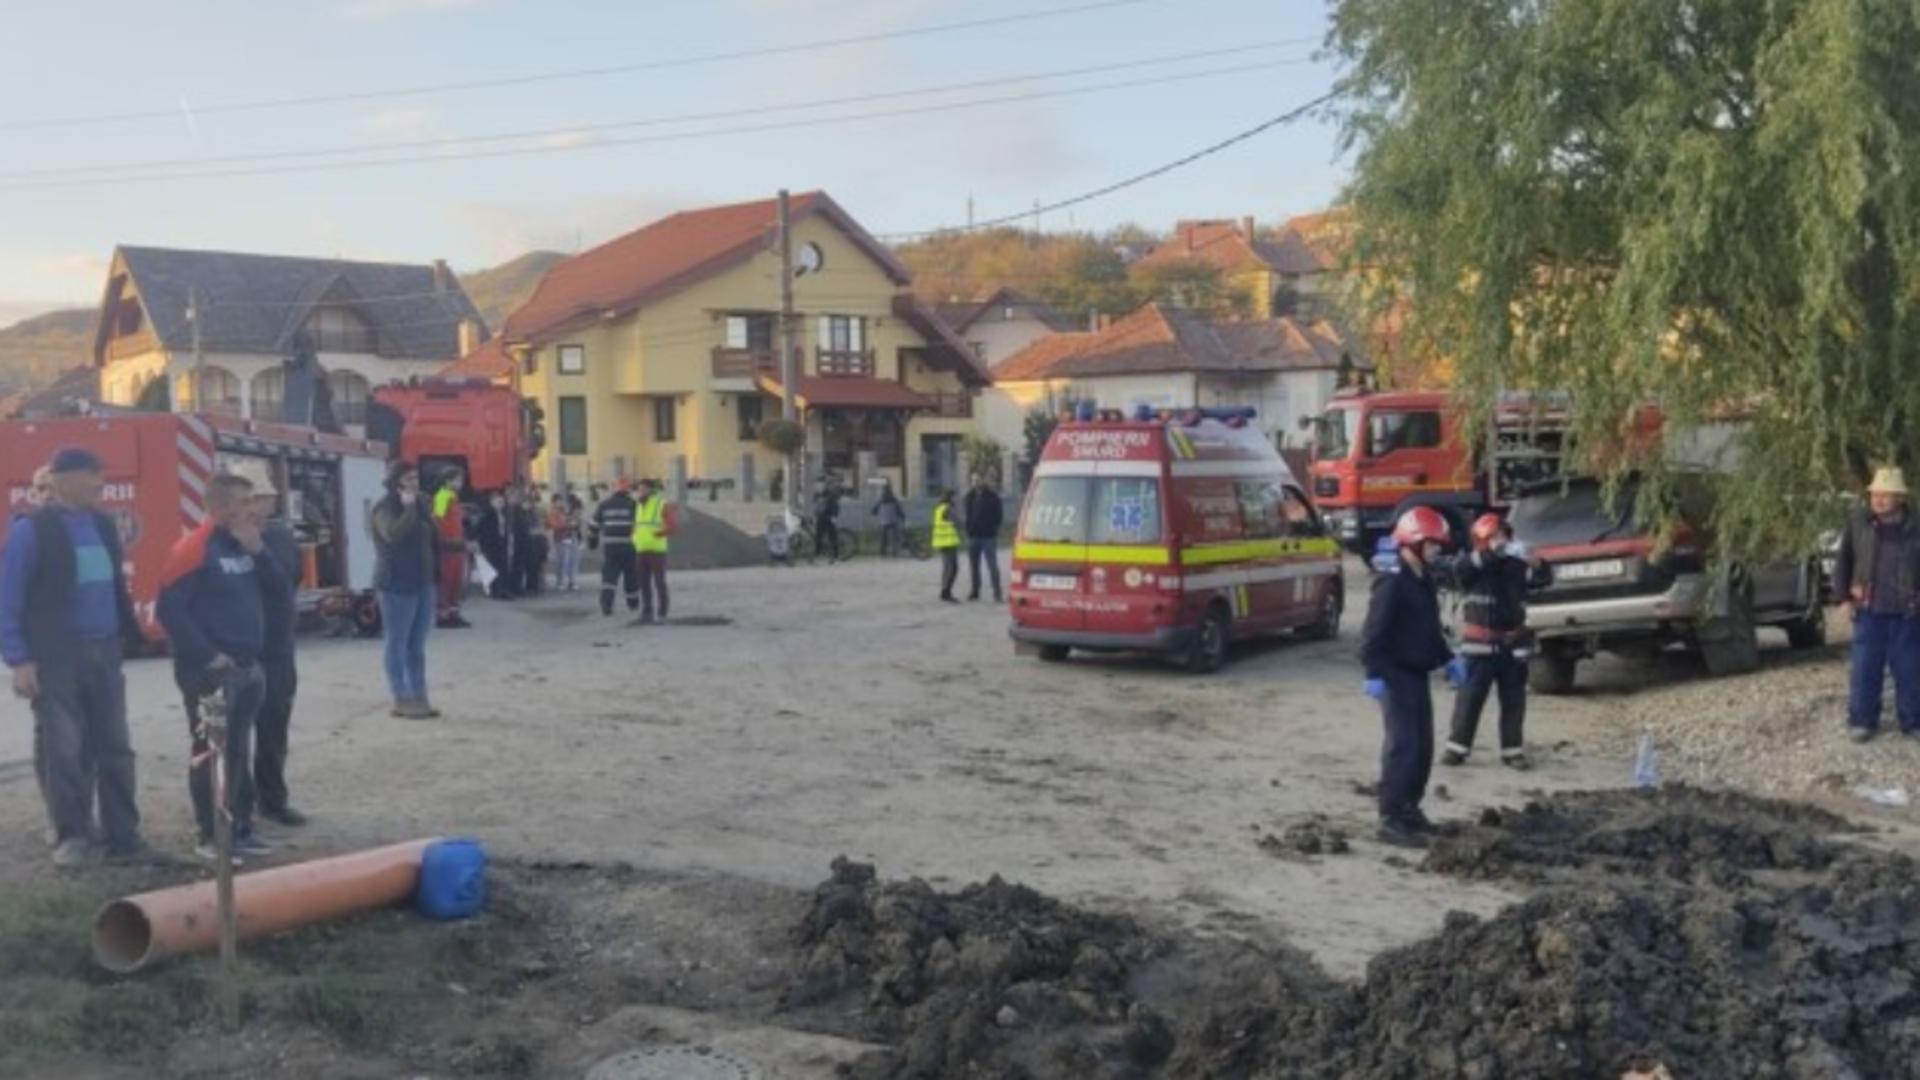 Moarte înfiorătoare - Un tânăr de 21 de ani, înghițit de un mal de pământ în județul Cluj - Detalii teribile